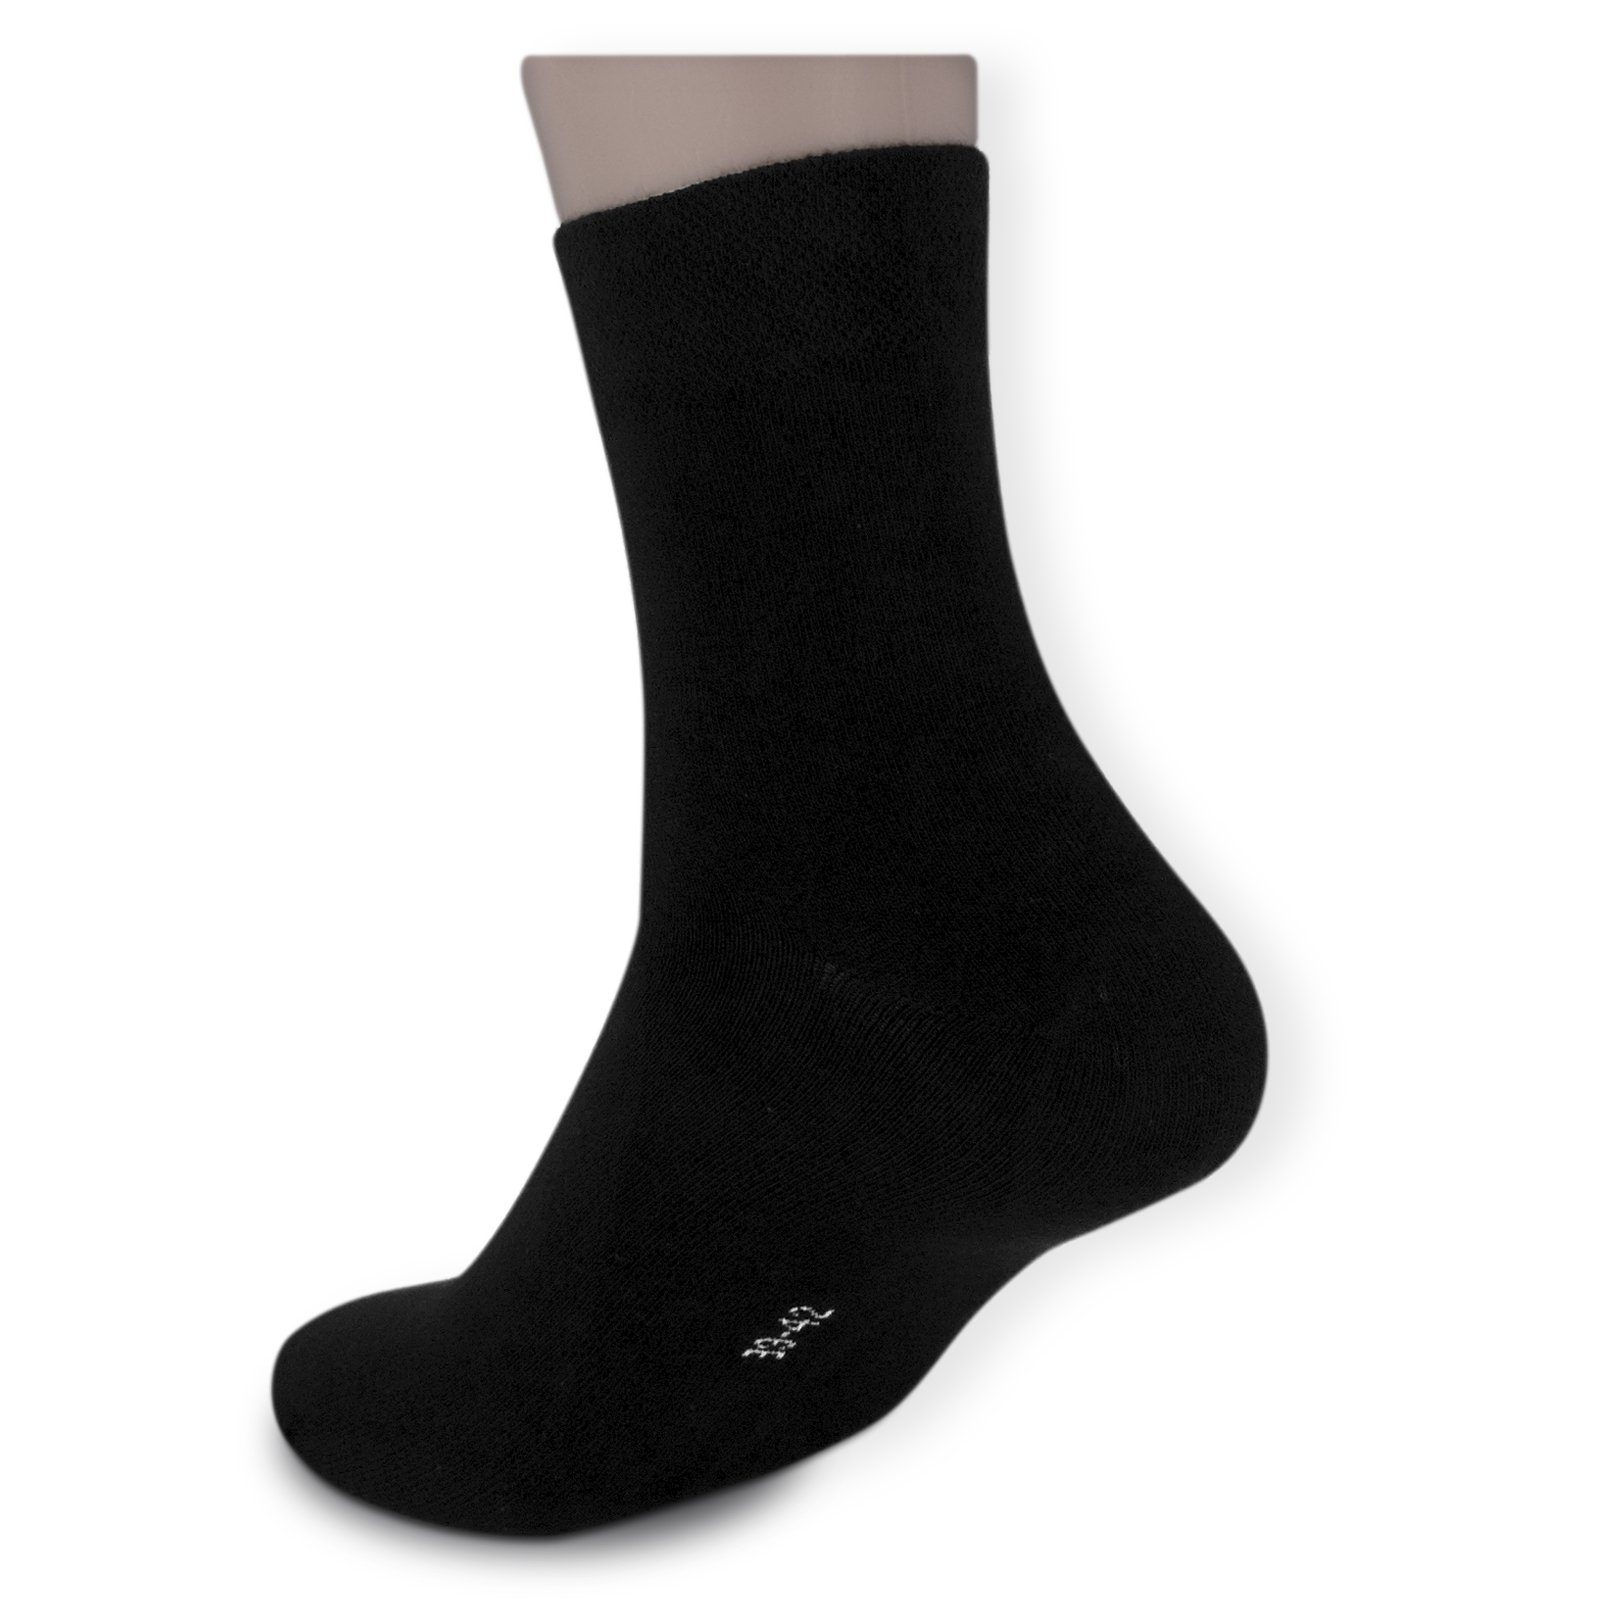 Kurzsocken BLACK Die (Bund, Business-Socken schwarz) ohne Komfortbund Sockenbude Gummi 5-Paar, mit